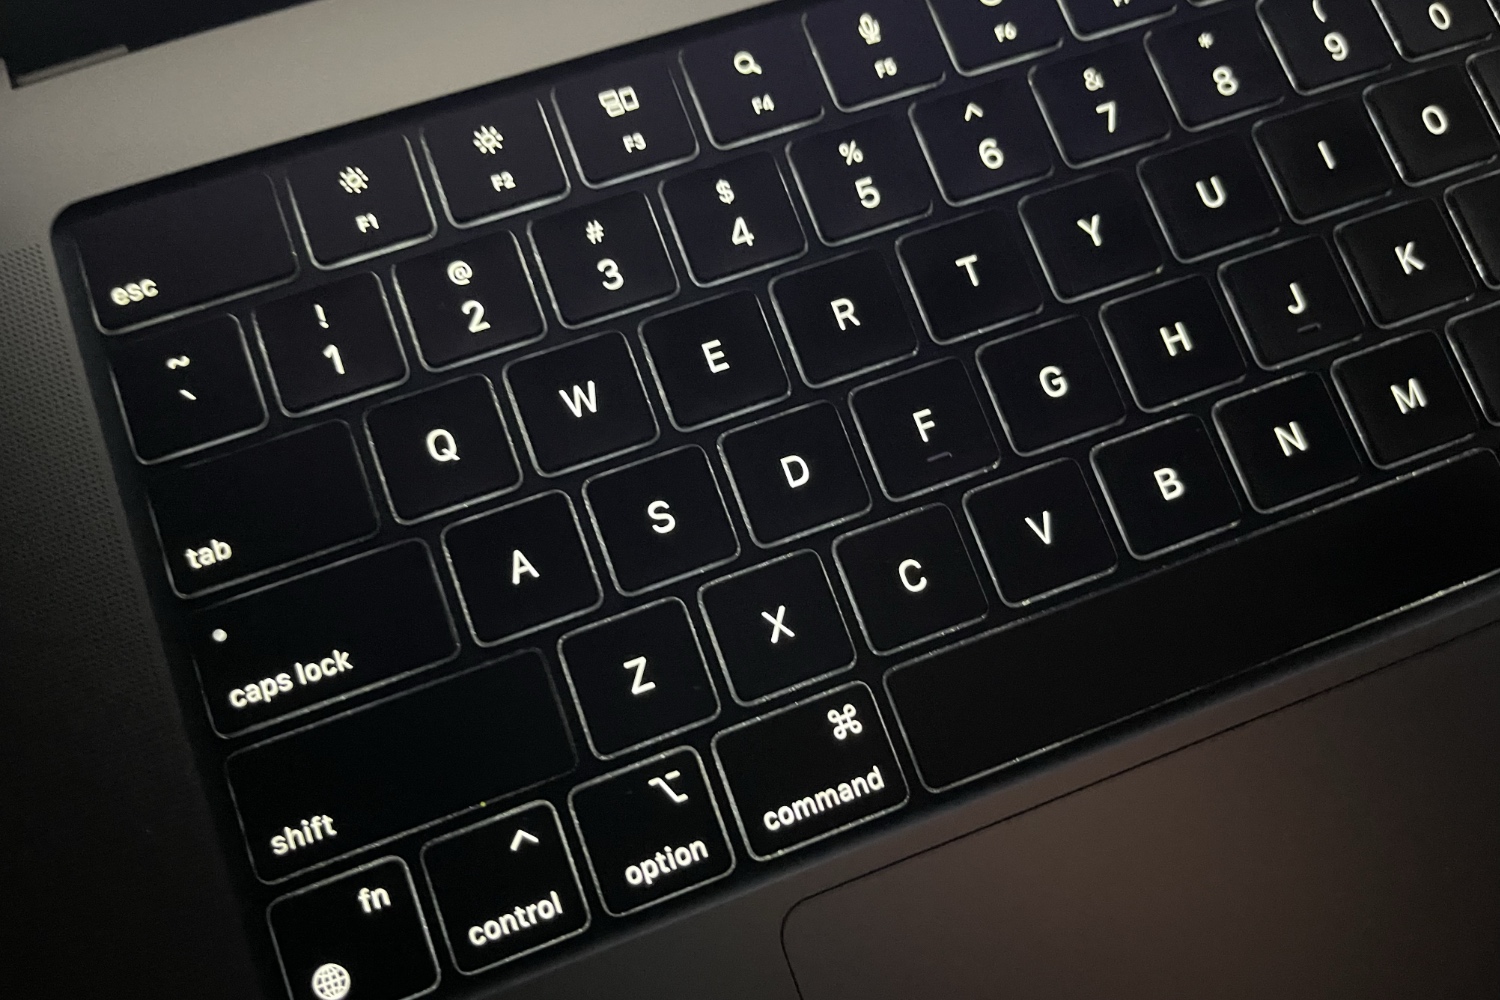 Instruere Rejse lunken How To Adjust Keyboard Backlighting Brightness On MacBook - iOS Hacker